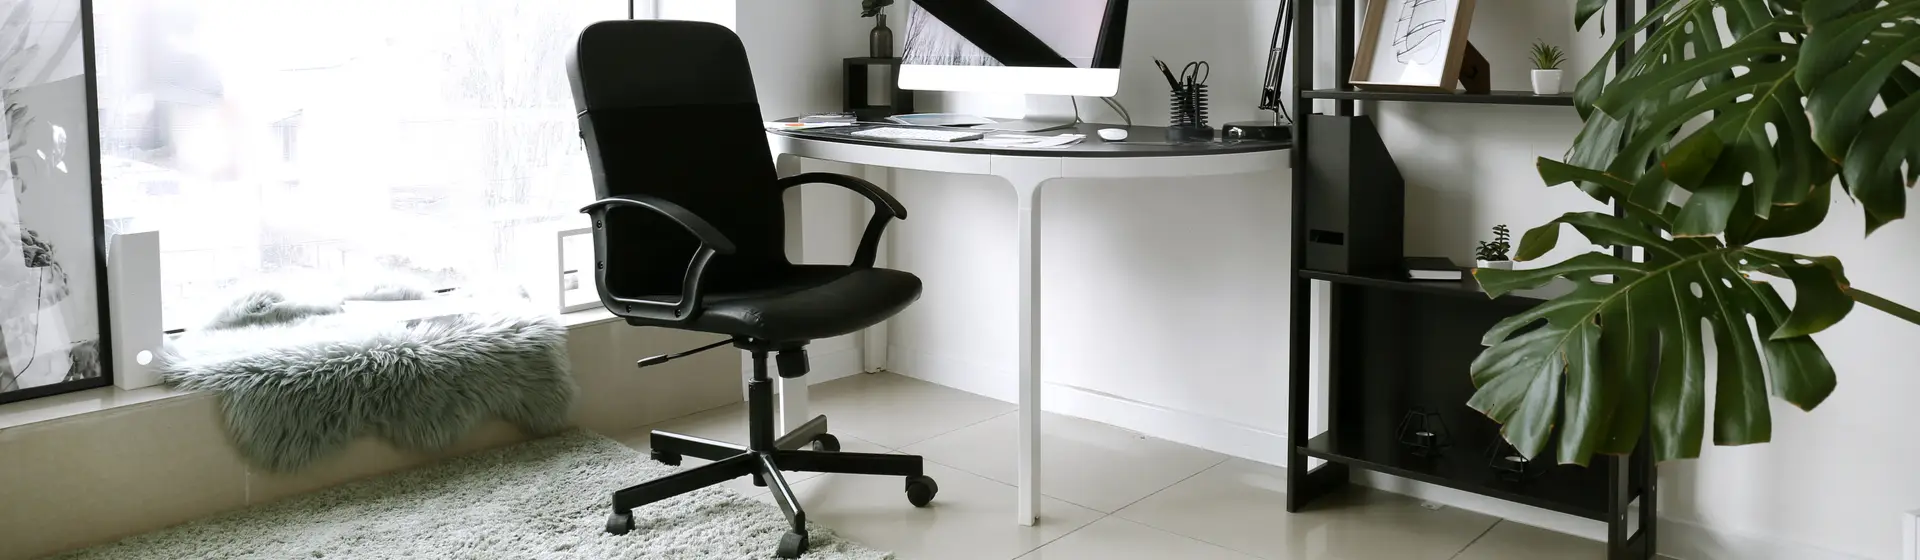 Melhor cadeira de escritório: 10 modelos confortáveis para comprar